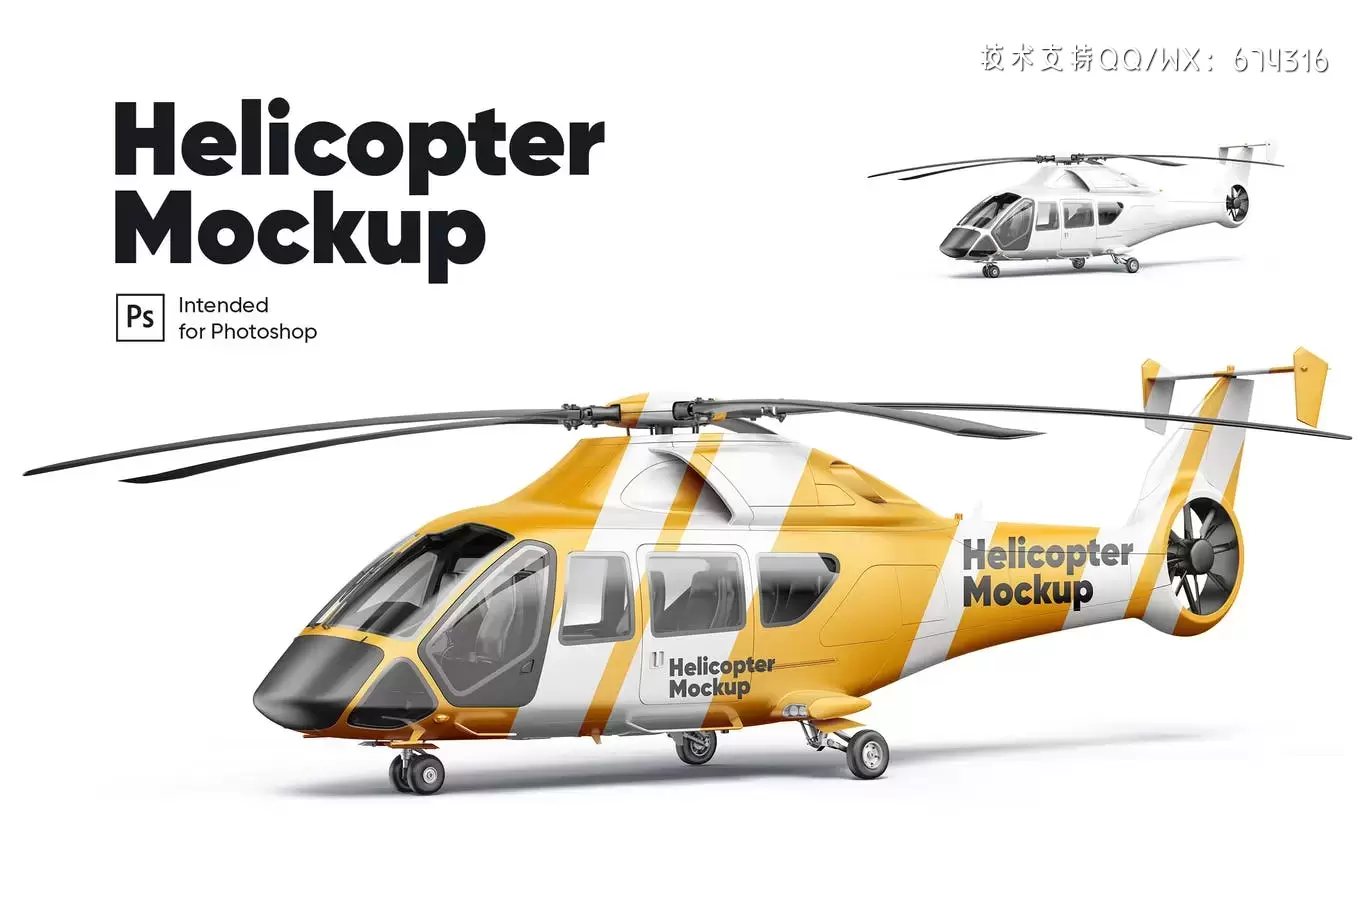 少见稀有的直升机机体广告设计VI样机展示模型mockups插图